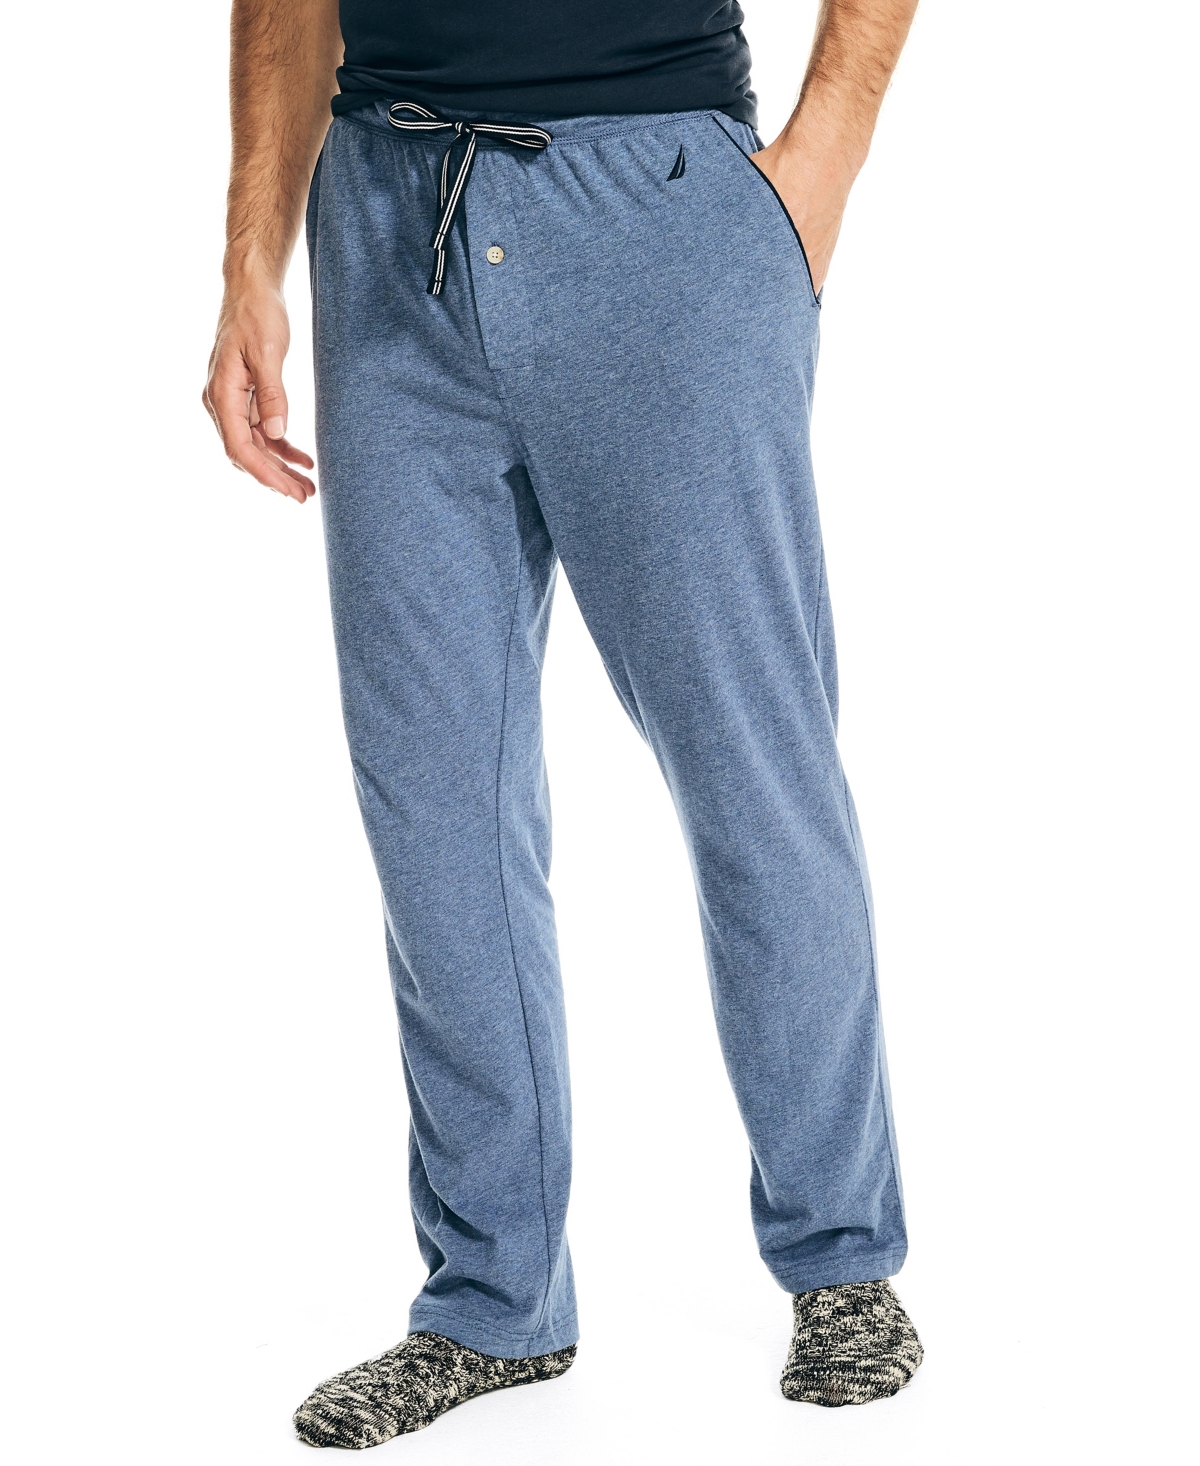 Men's Knit Classic Pants - Bluing Ohtr